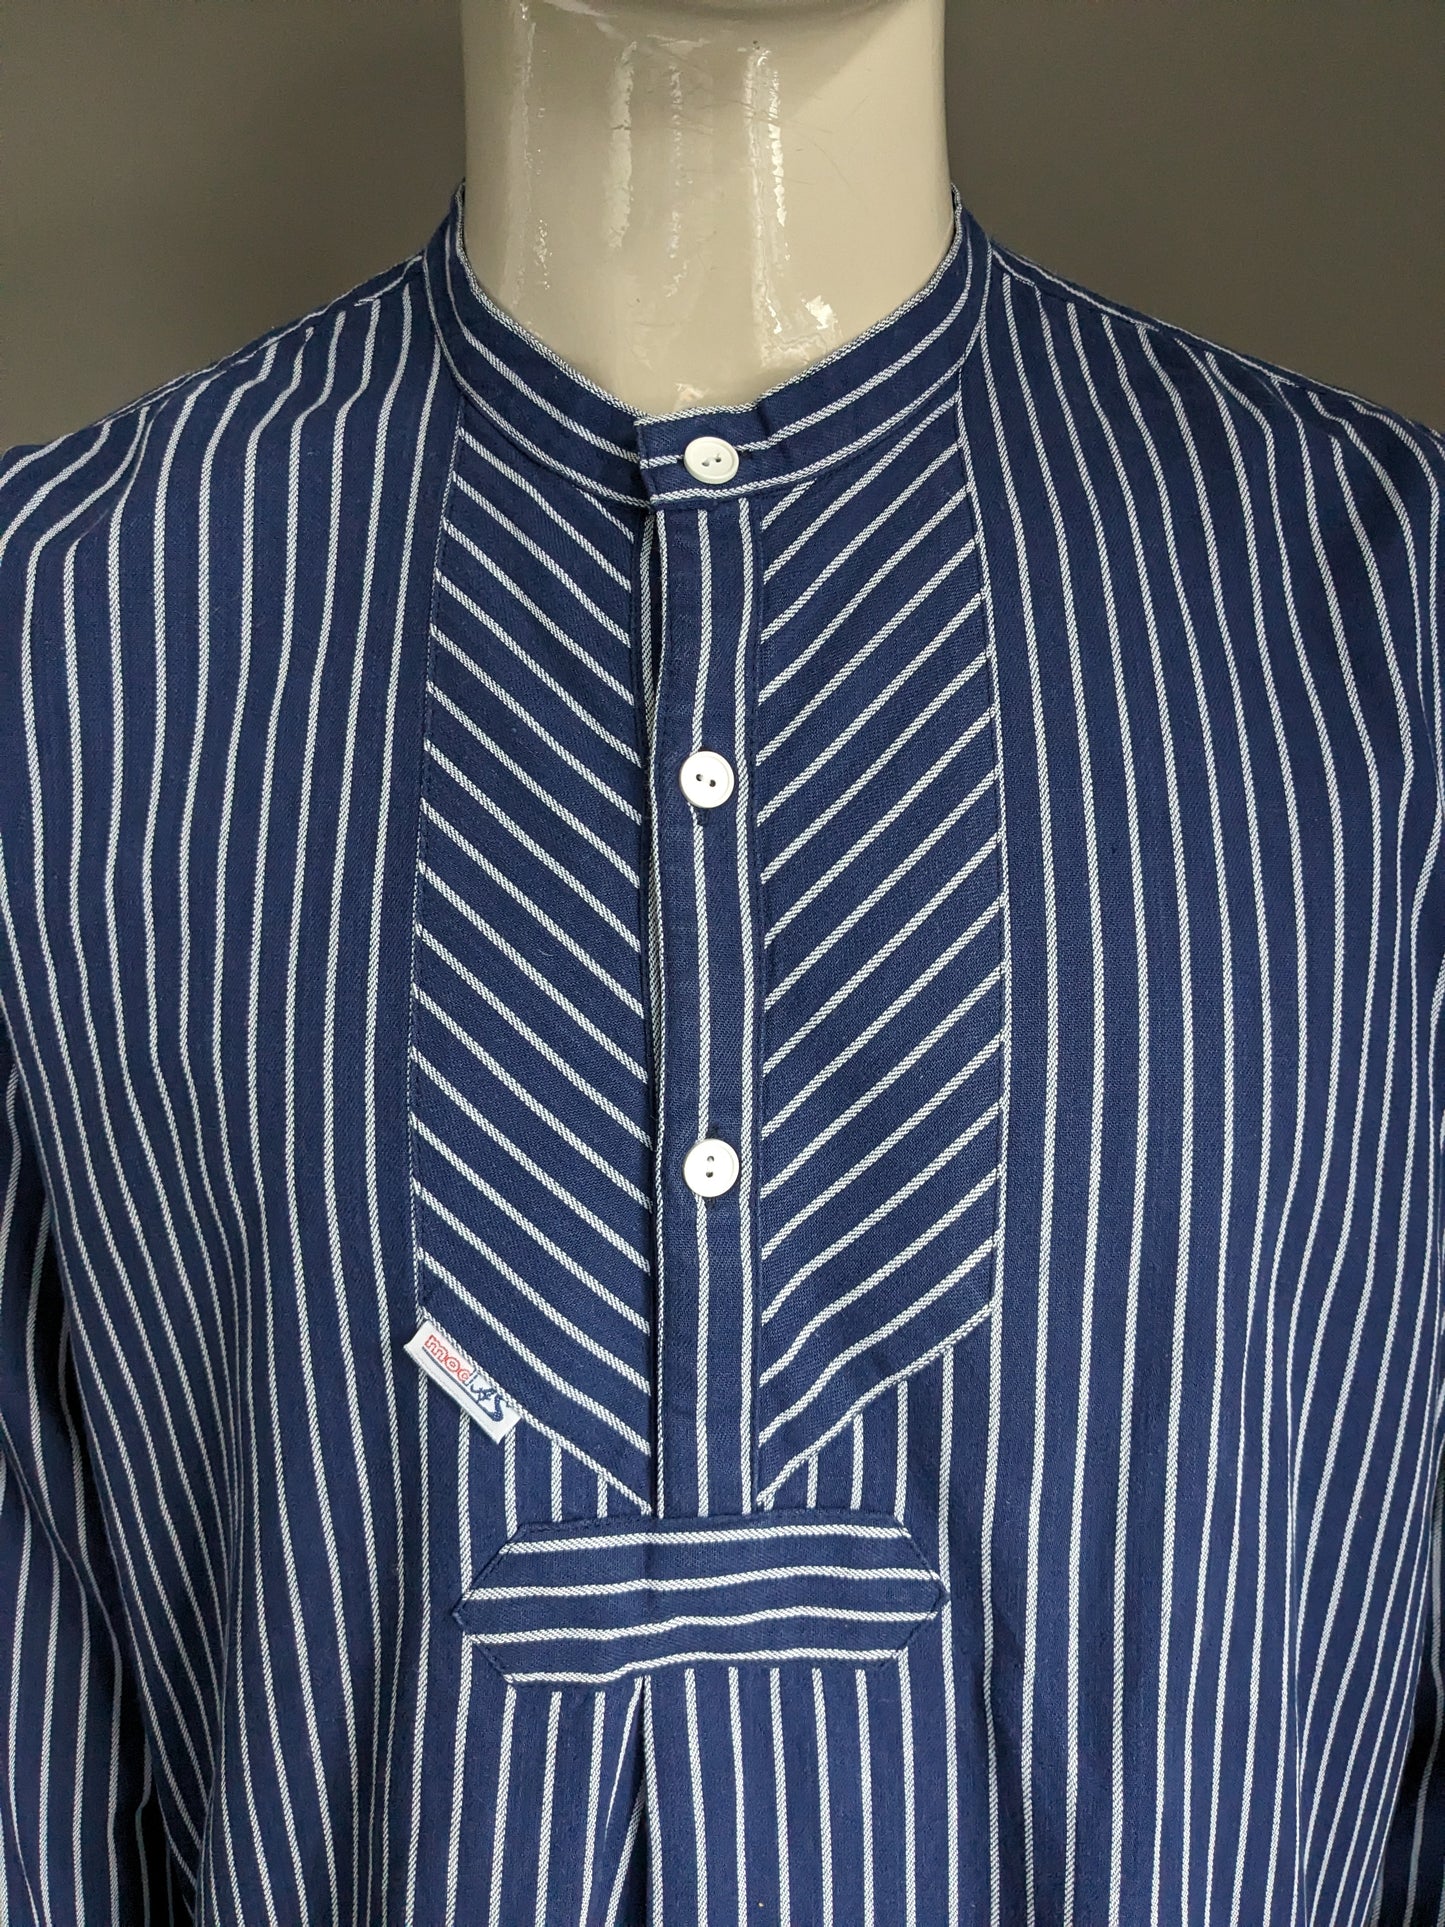 Maglione / camicia da polo modas vintage. Standing / Farmers / Mao Collar. Strisce bianche blu. Taglia XL.